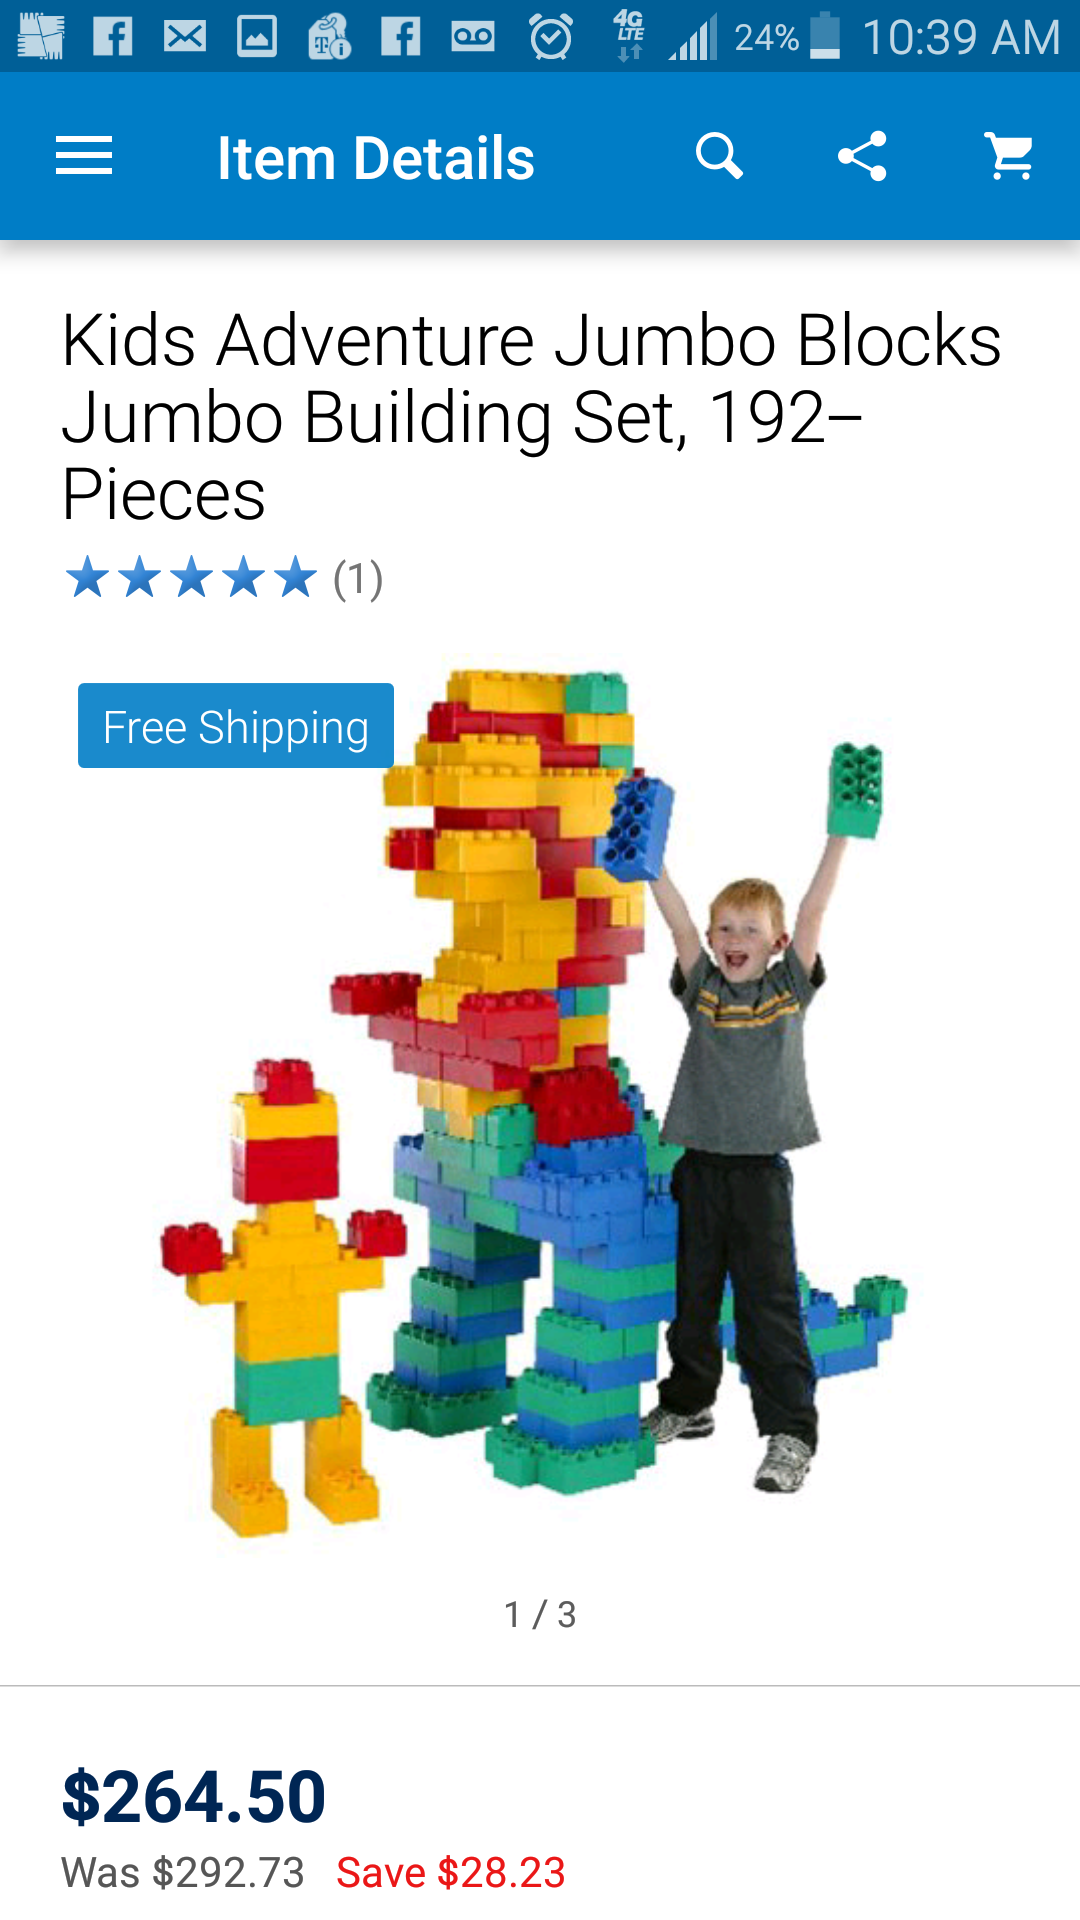 Brand new in box kids adventure jumbo blocks